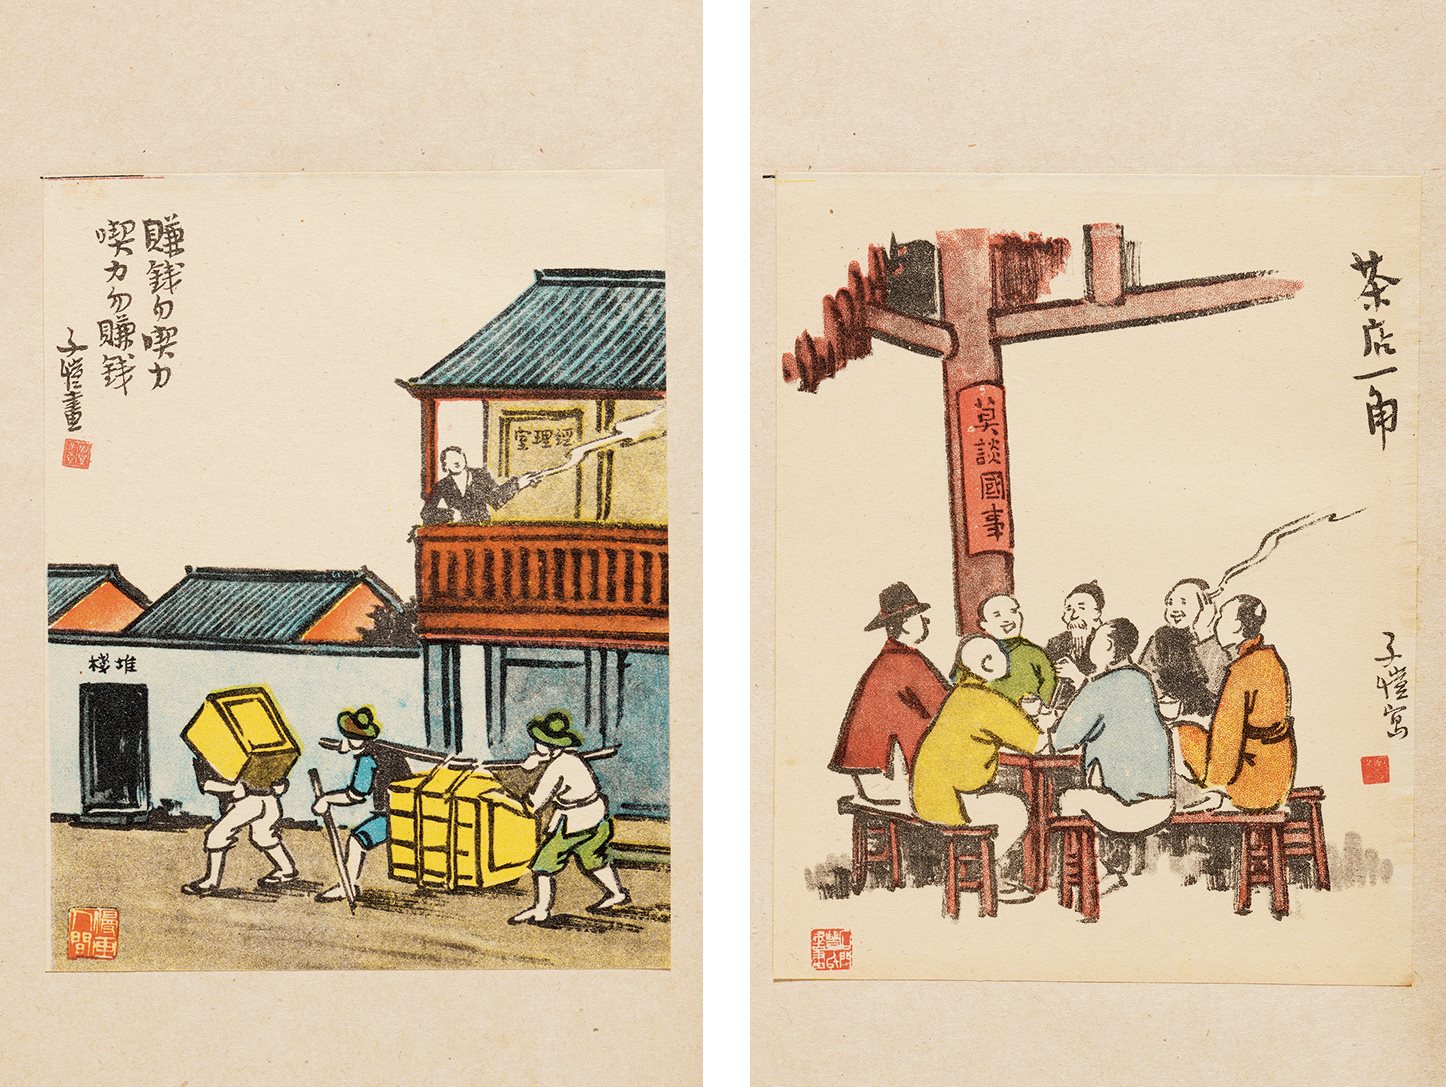 彩色版子恺漫画选 民国三十五年（1946）上海万叶书店初版初印